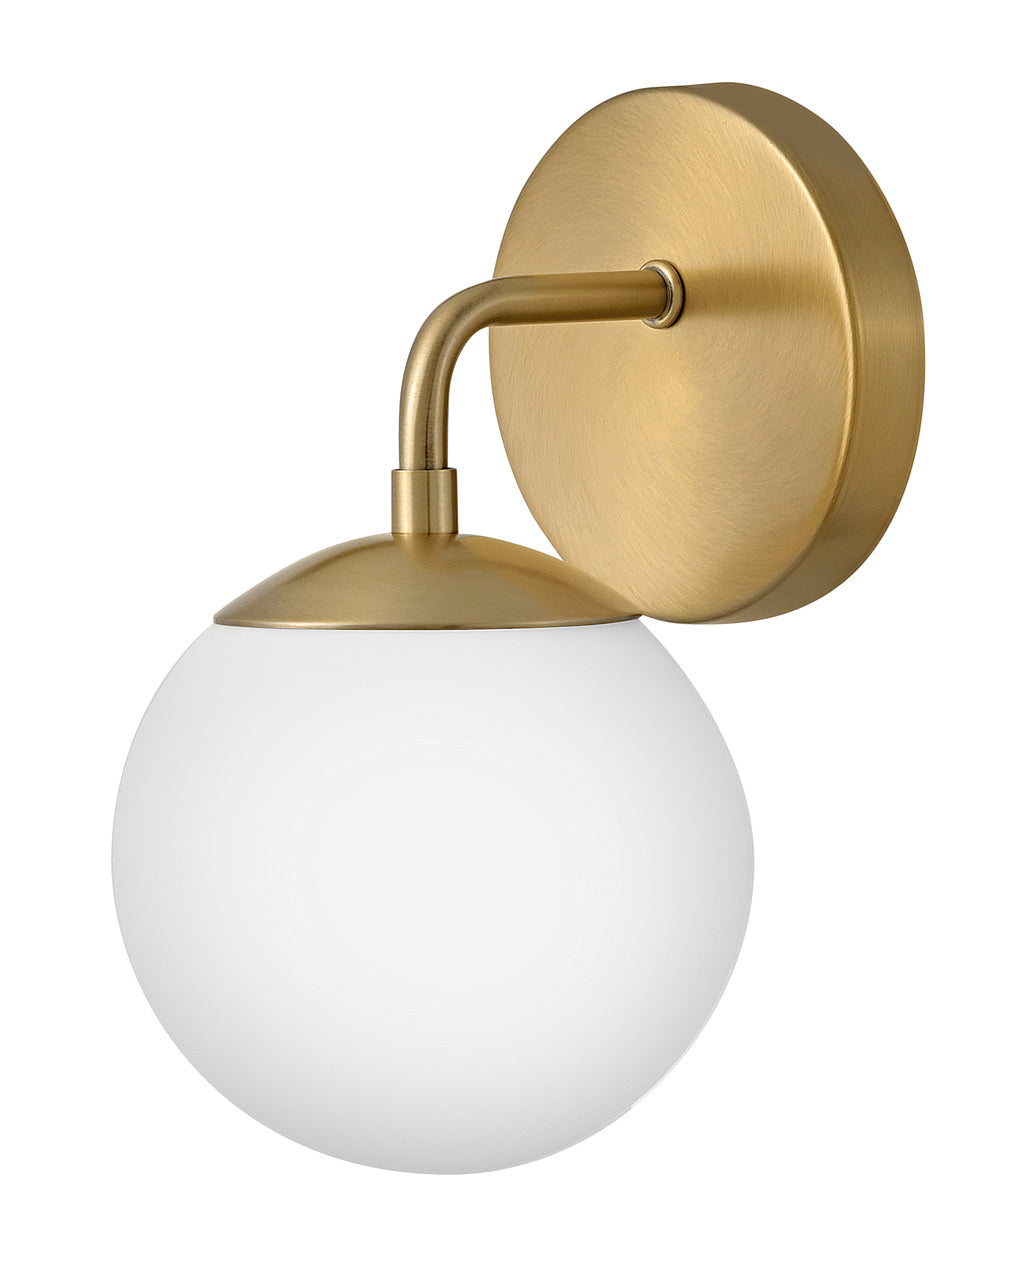 Lark Juniper 85000LCB Wall Sconce Light Fixture - Lacquered Brass, Gold